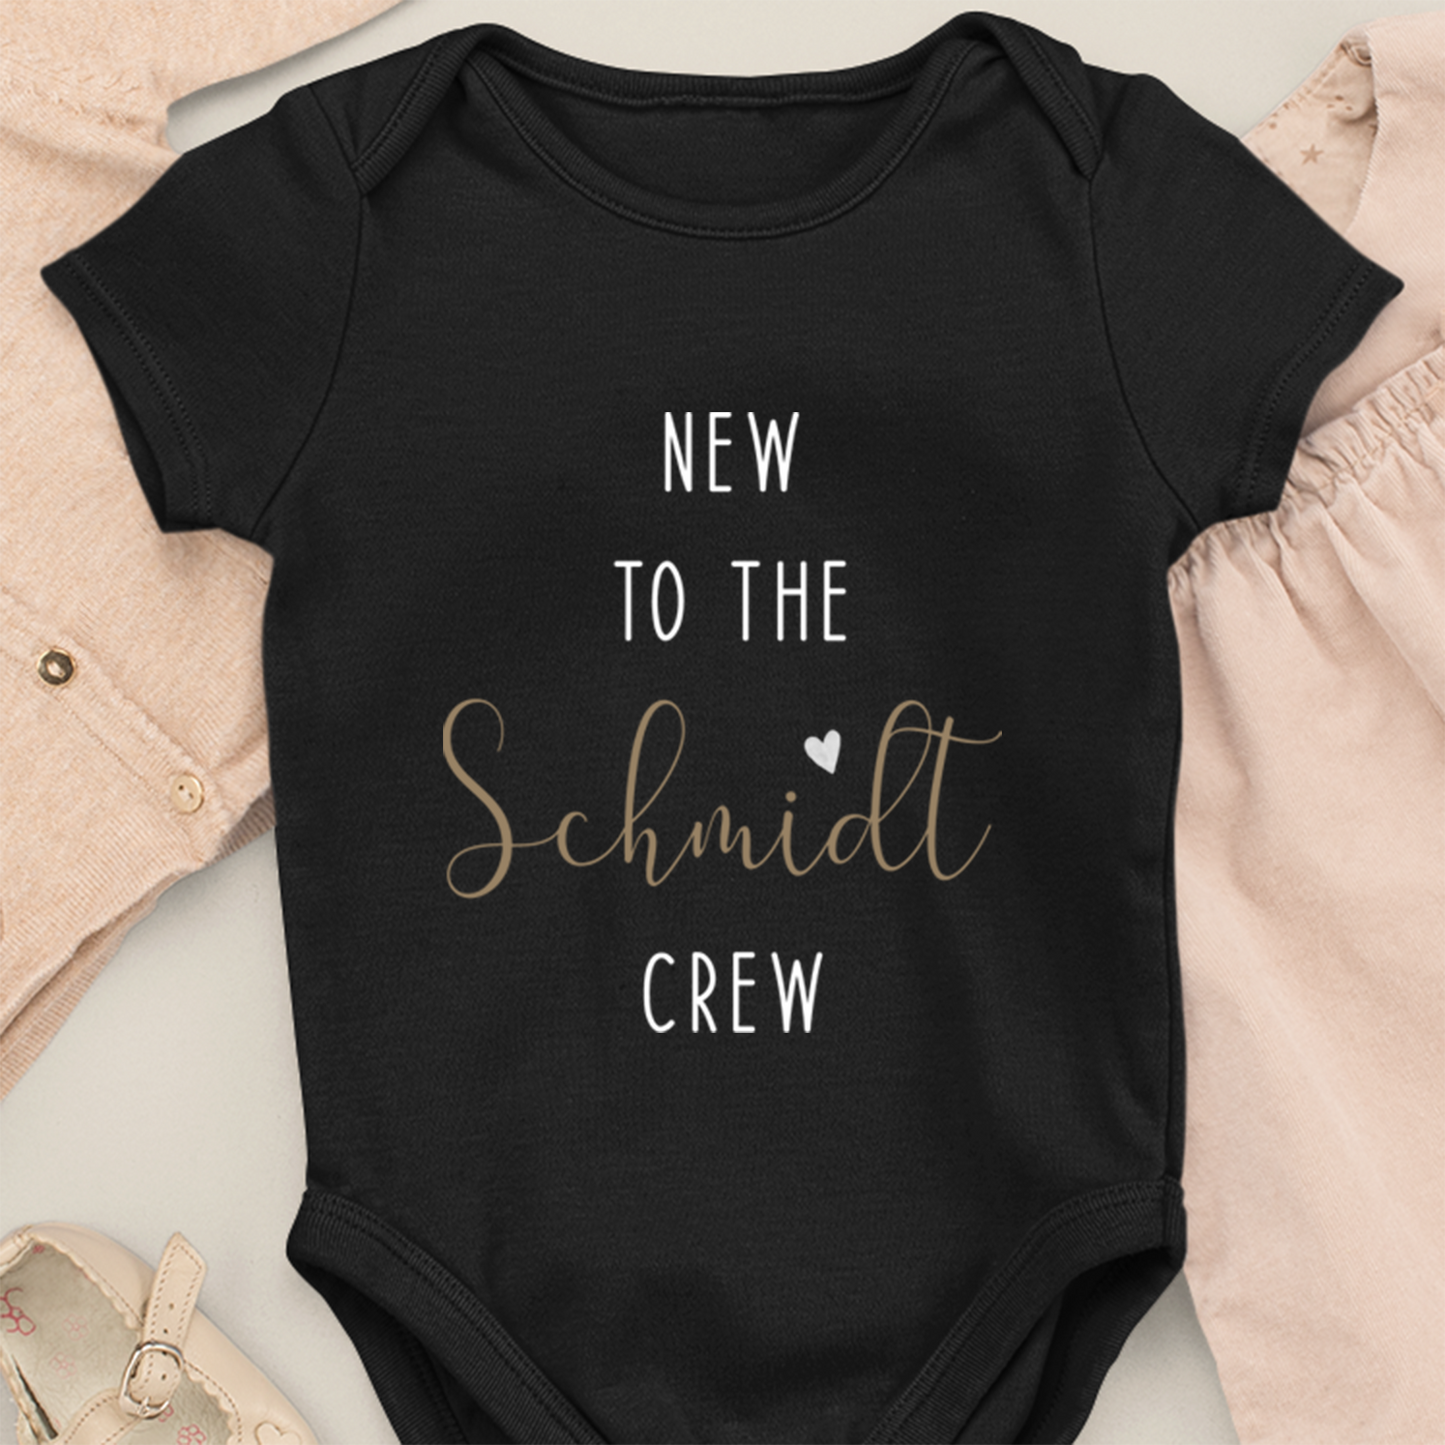 New to the "Familienname" Crew - Body per neonato organico bianco - Nome personalizzato